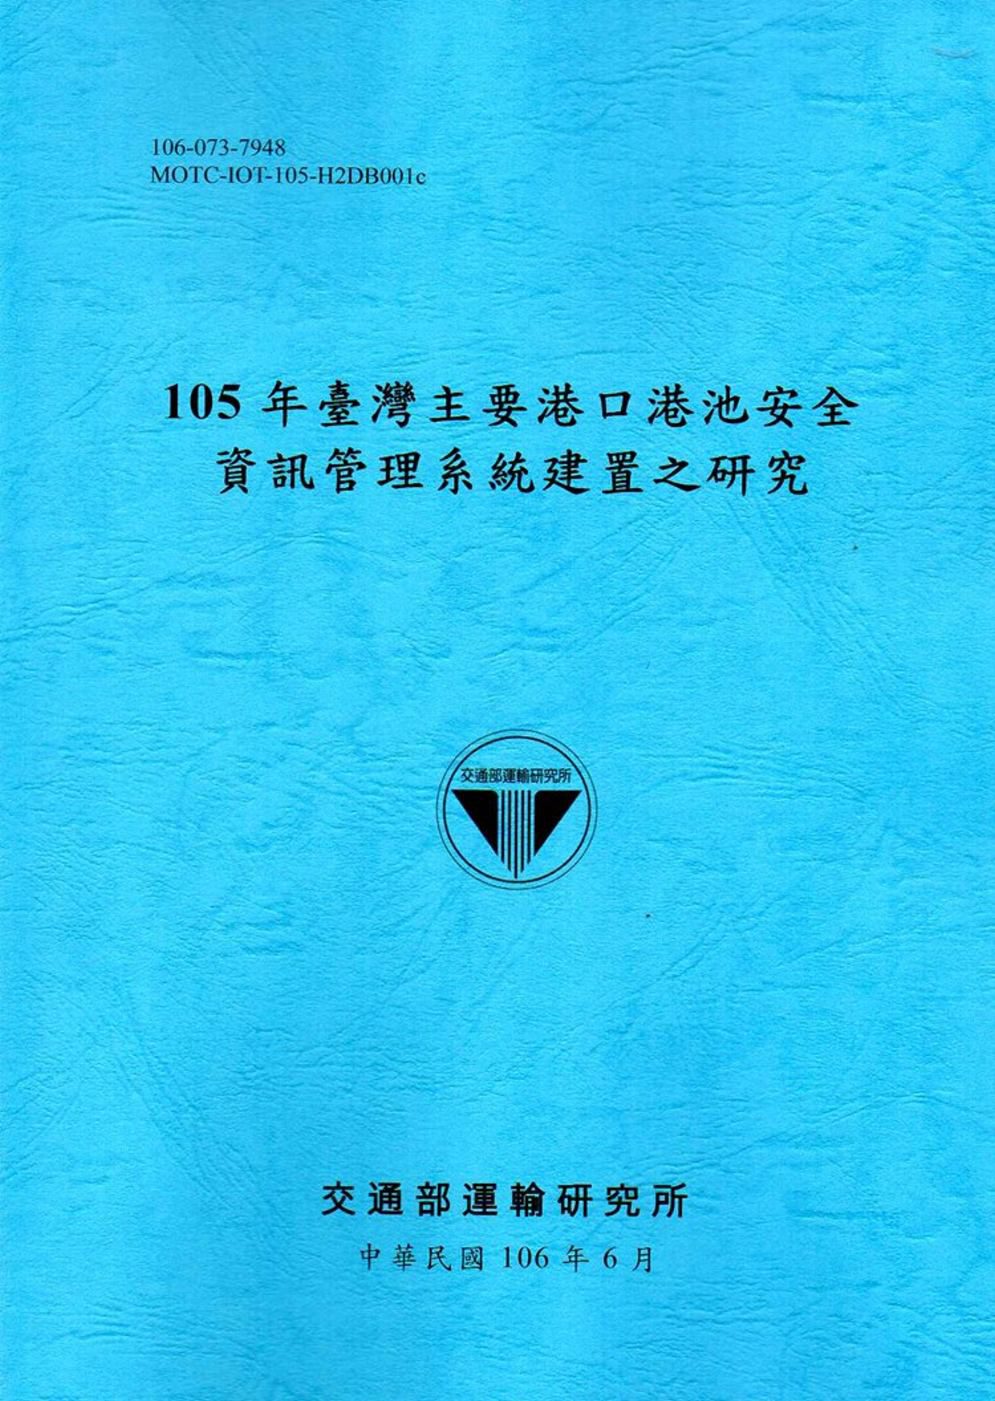 105年臺灣主要港口港池安全資訊管理系統建置之研究[106藍]